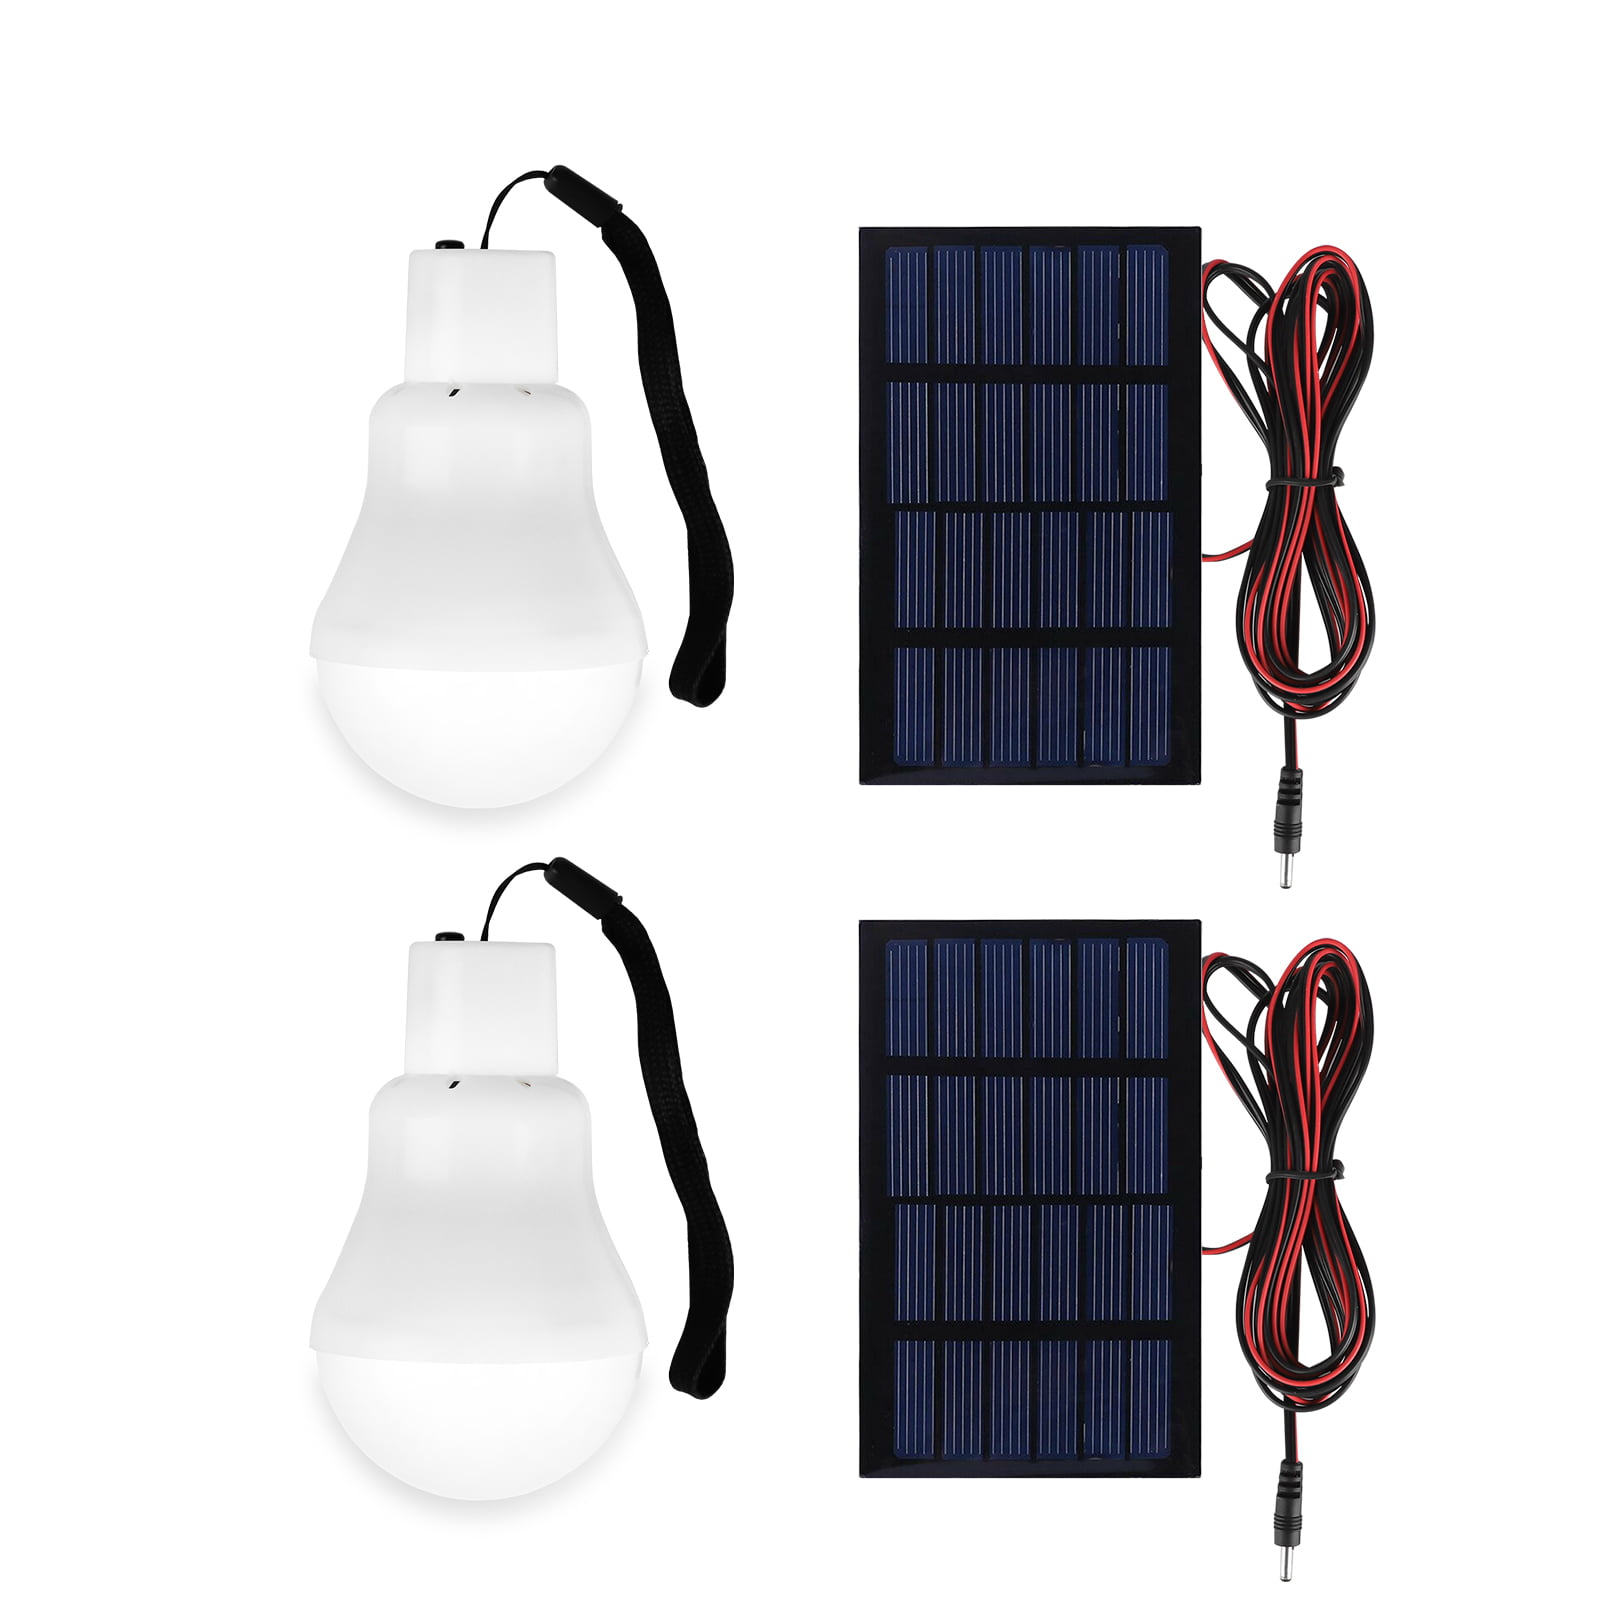 Solar Light Bulb, Solar Lamp Portable LED Light Solar Panel Powered Rechargeable Lights for Home